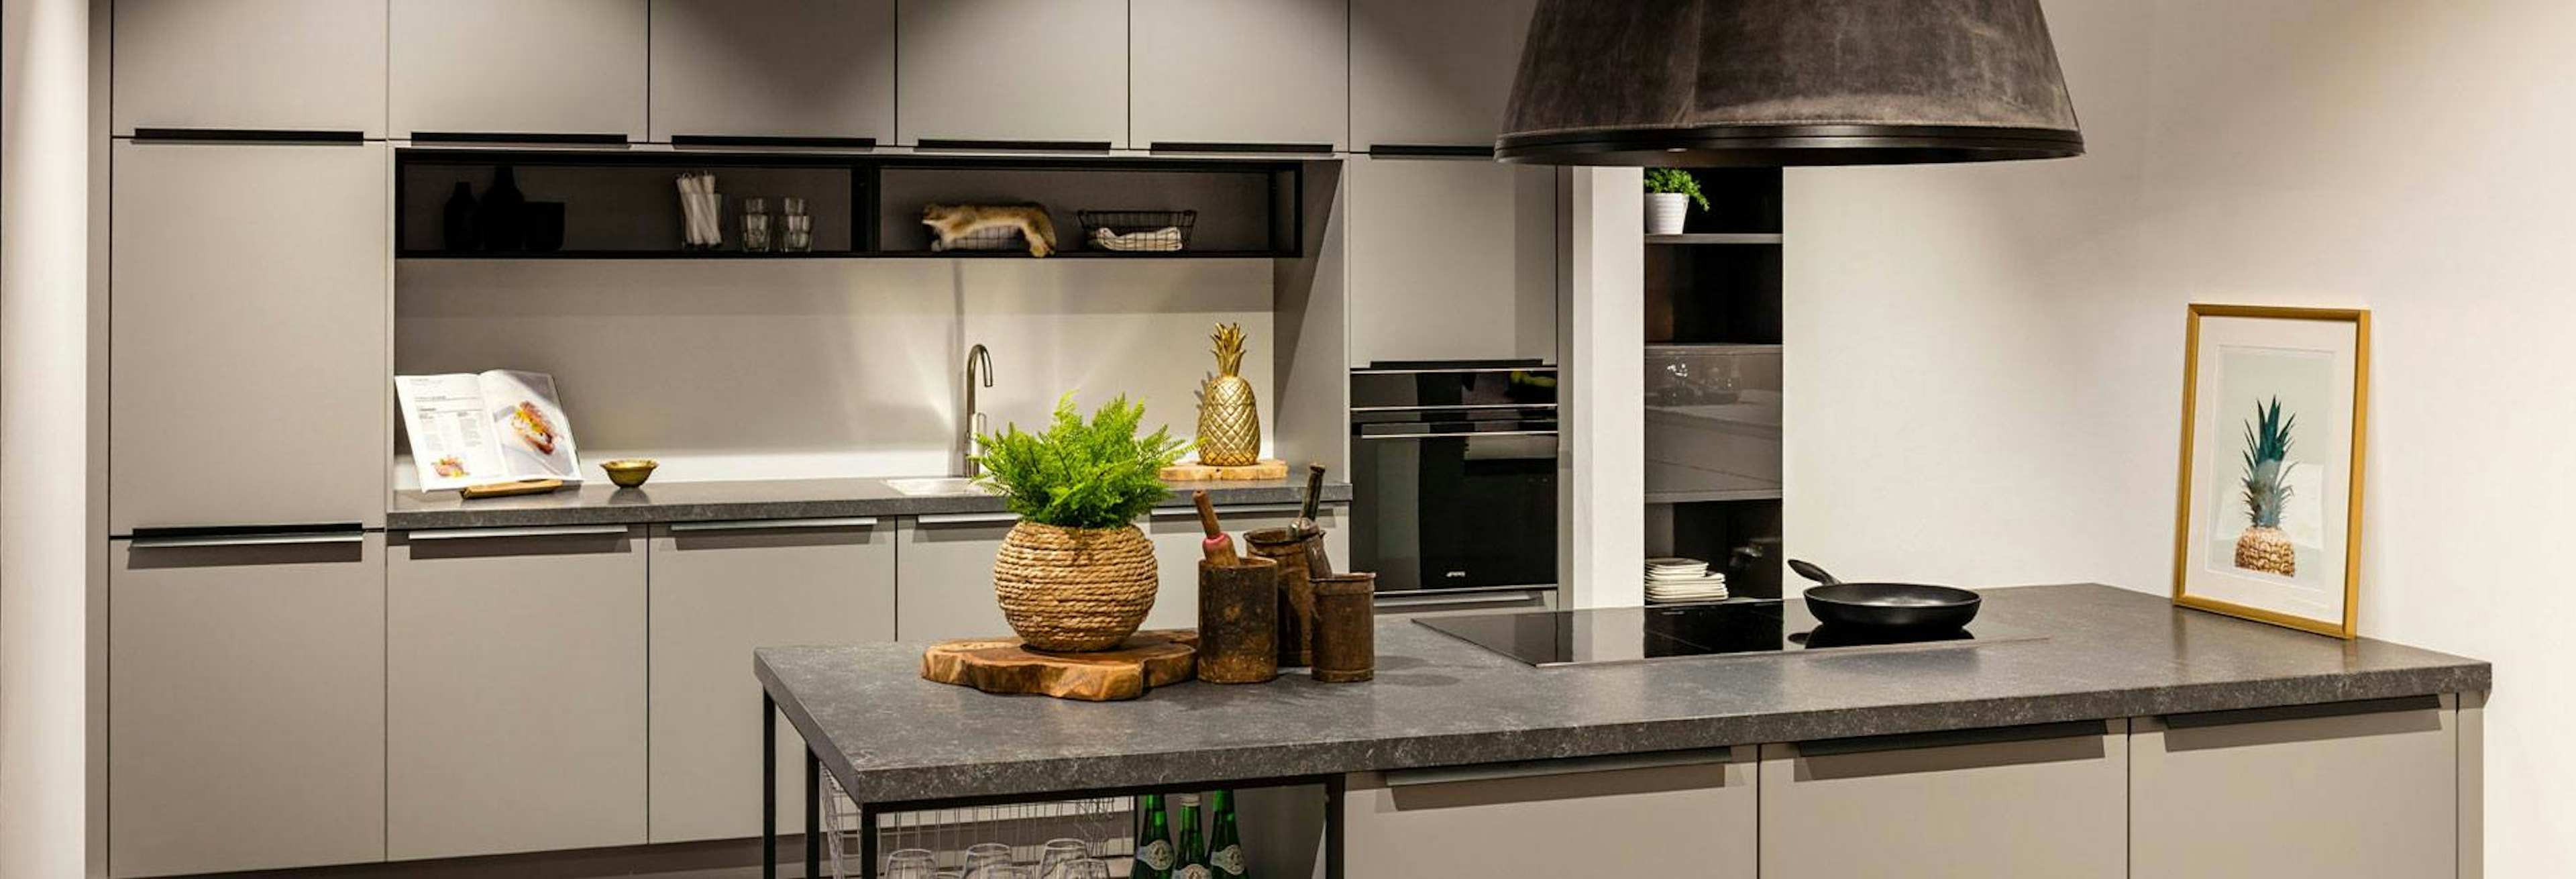 Design keuken met stijlvol kookeiland